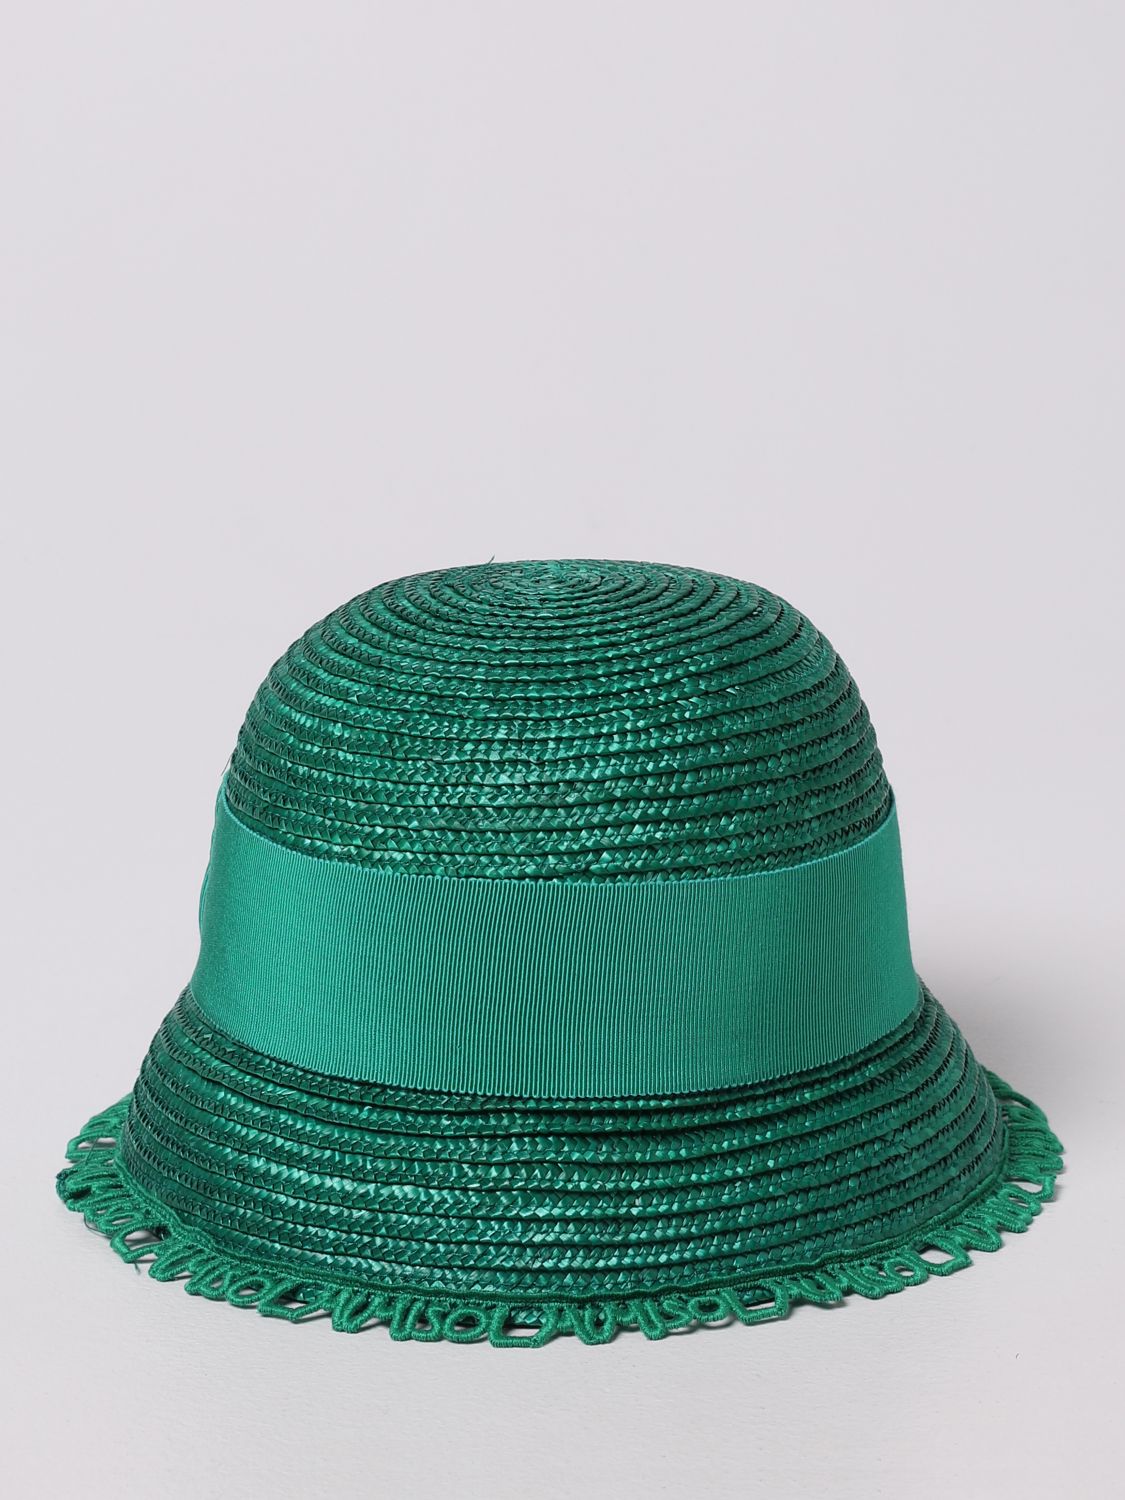 Girls' hats Mi Mi Sol: Mi Mi Sol hat in woven straw green 2